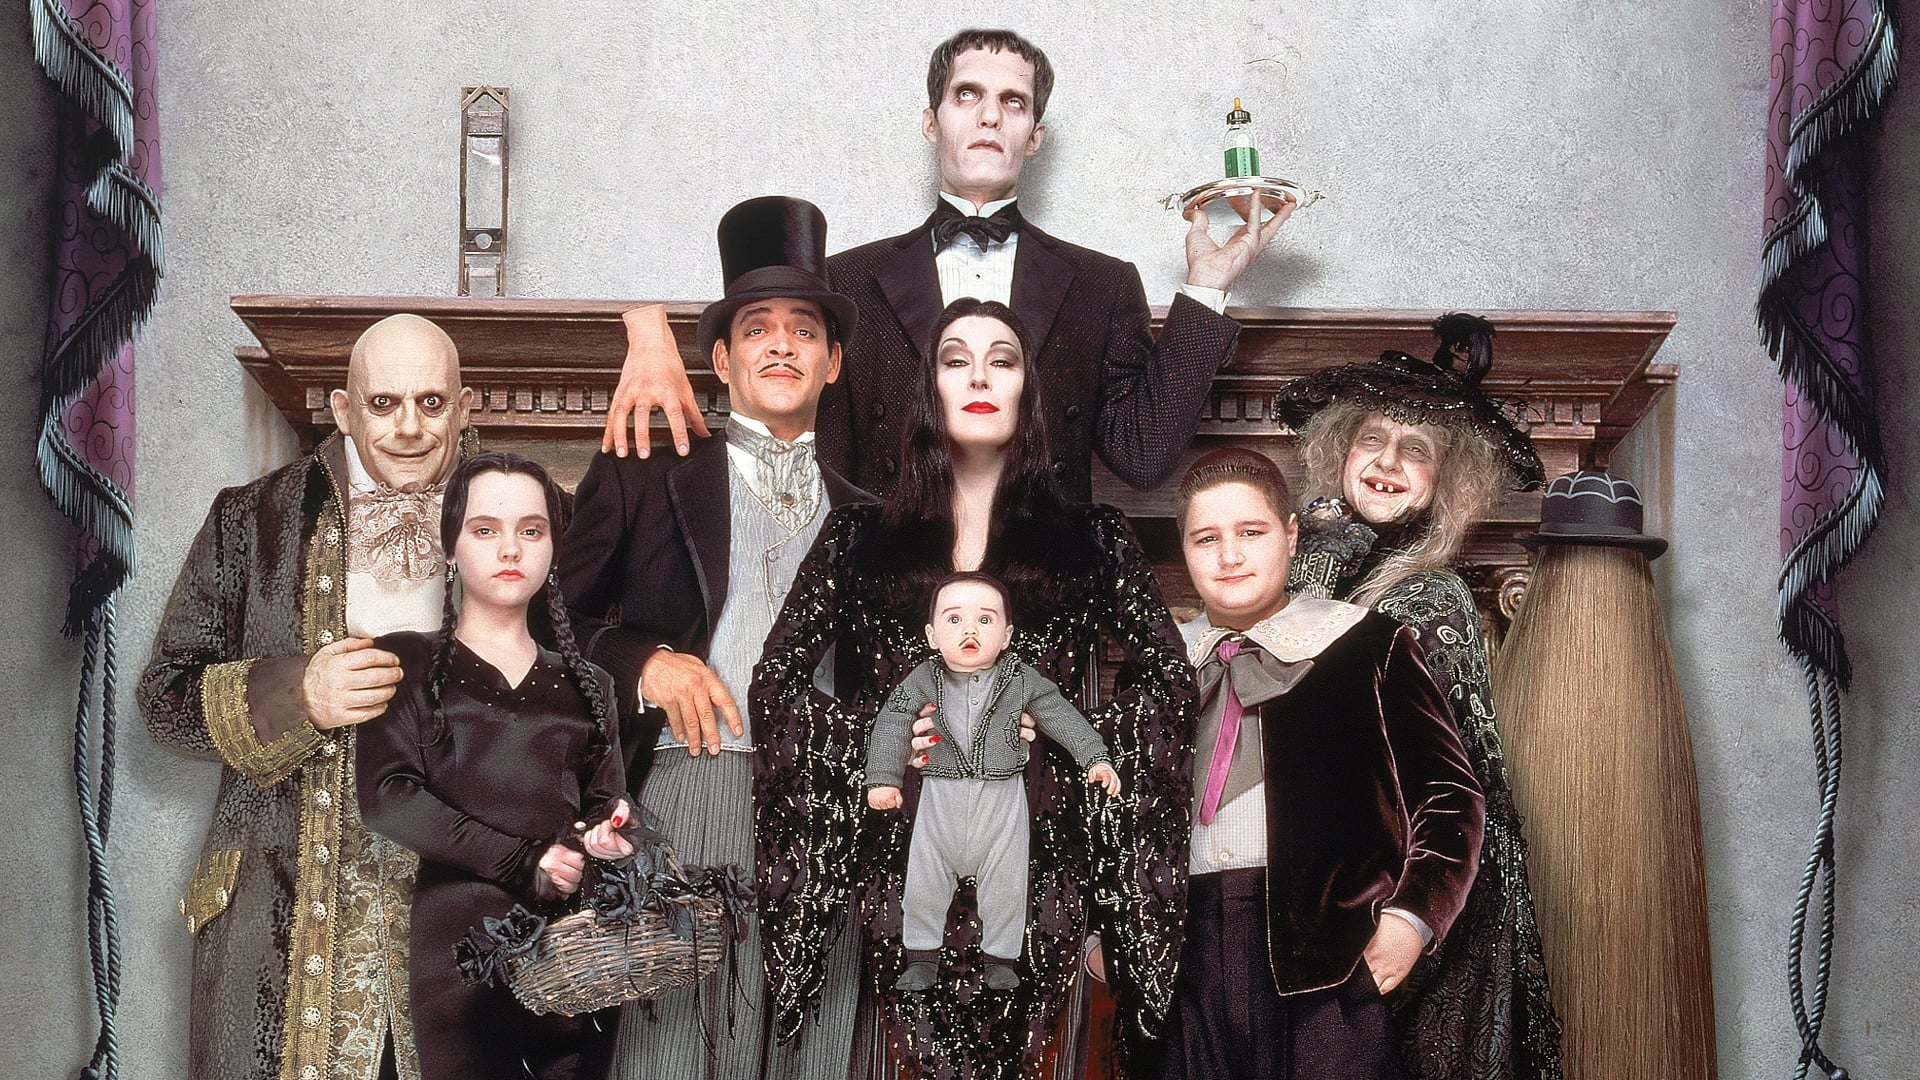 La famiglia Addams 2